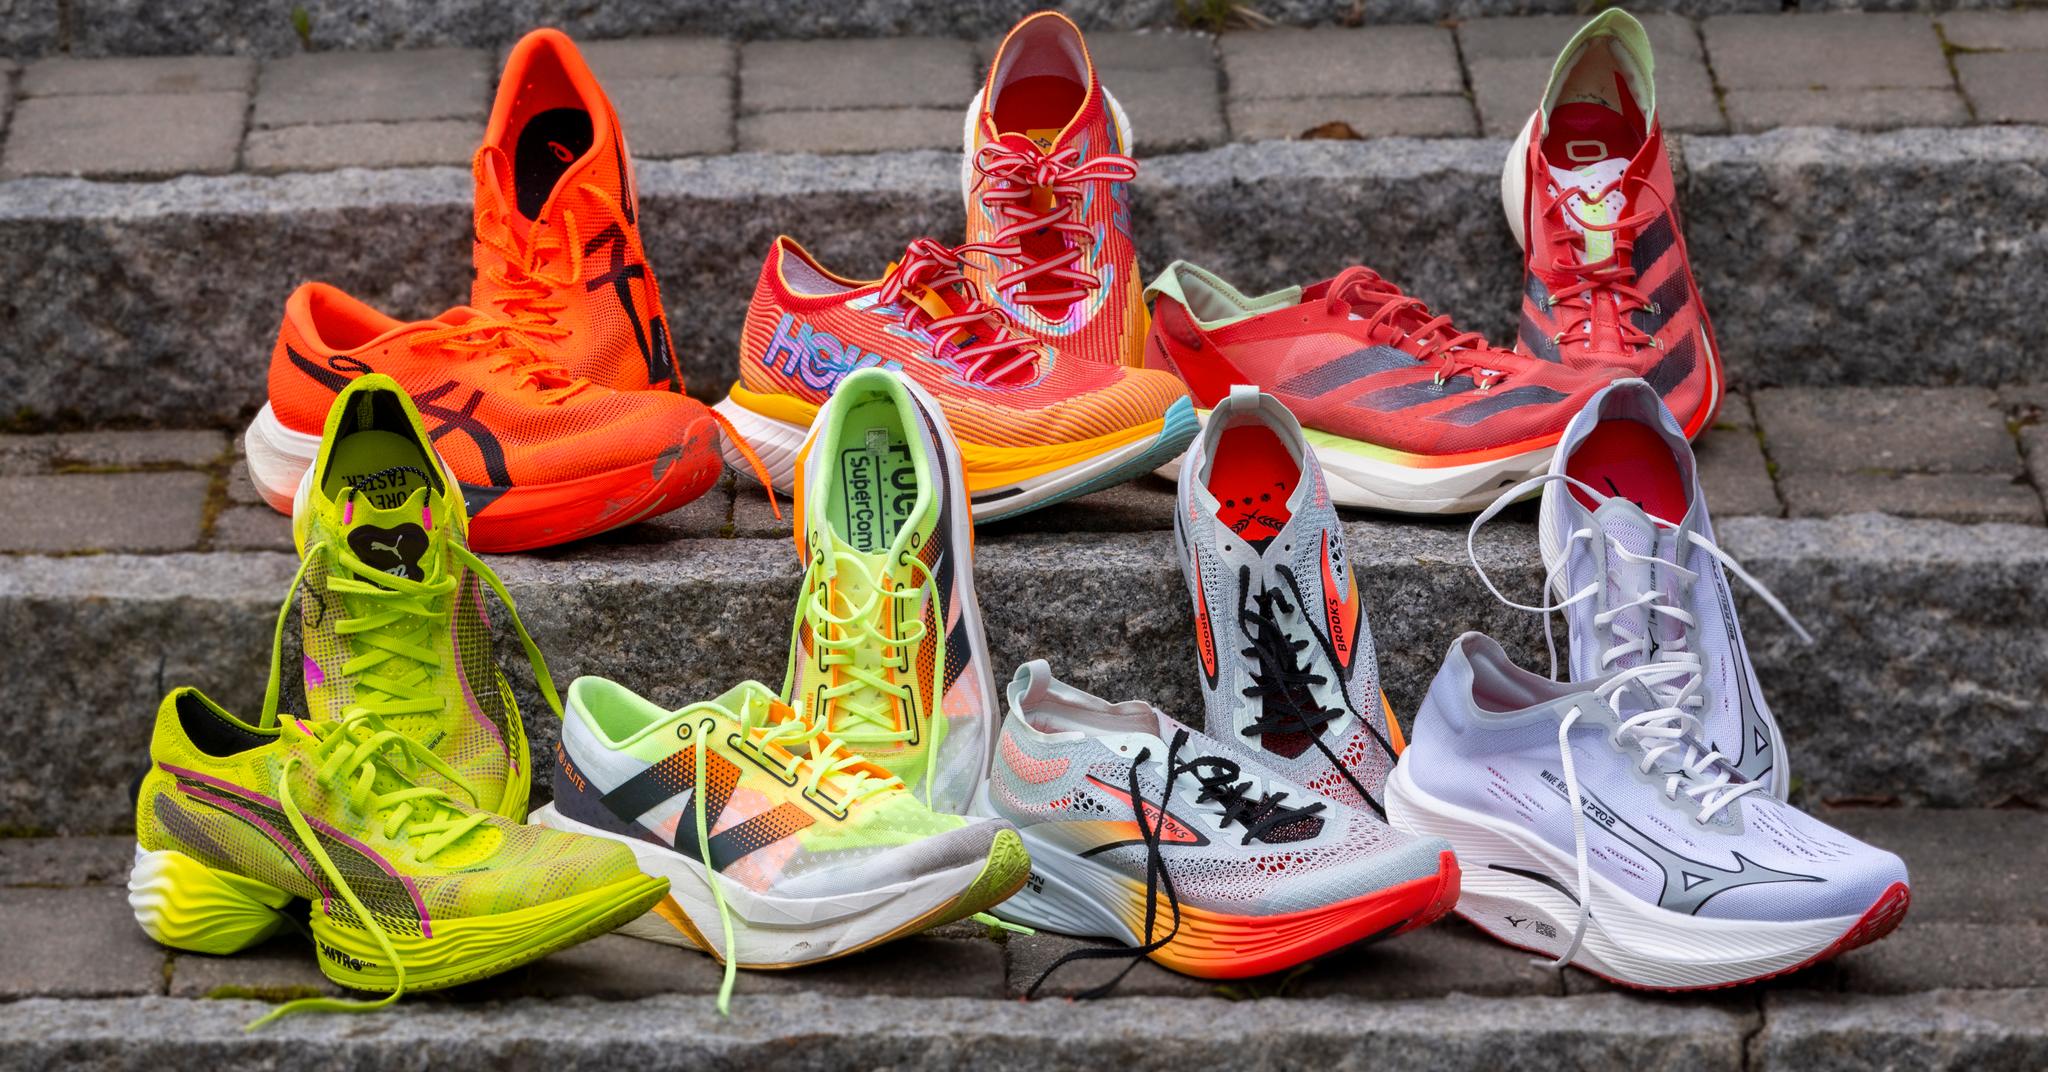 Det finnes en myriade av sko å velge mellom. Hvilke bør du velge?